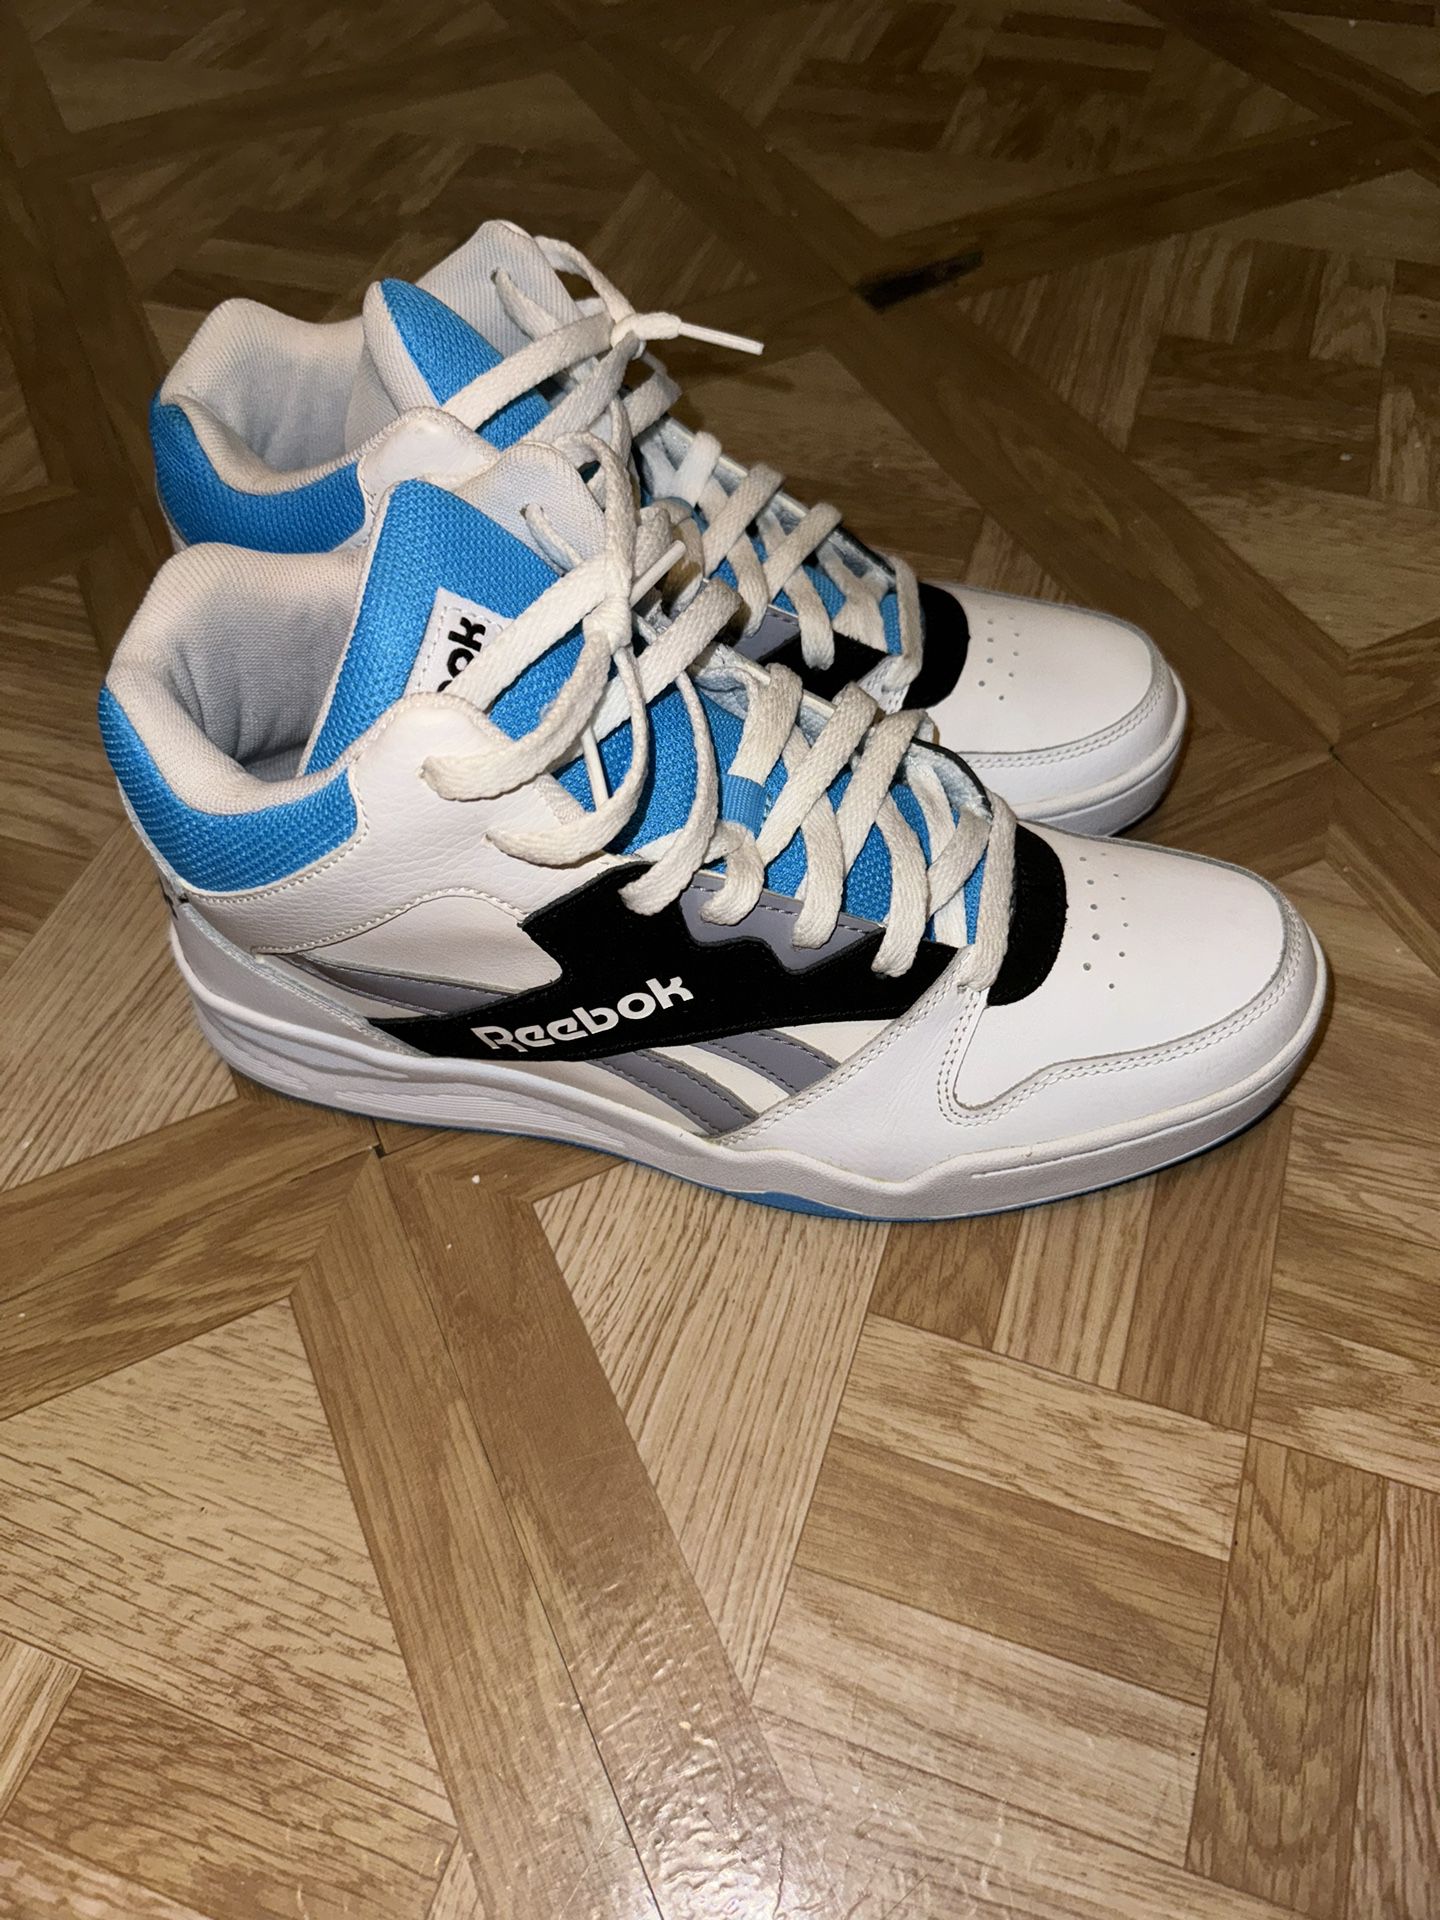 Reebok Royal BB4500 Hi Blue/White  - Men's Lifestyle Sneakers